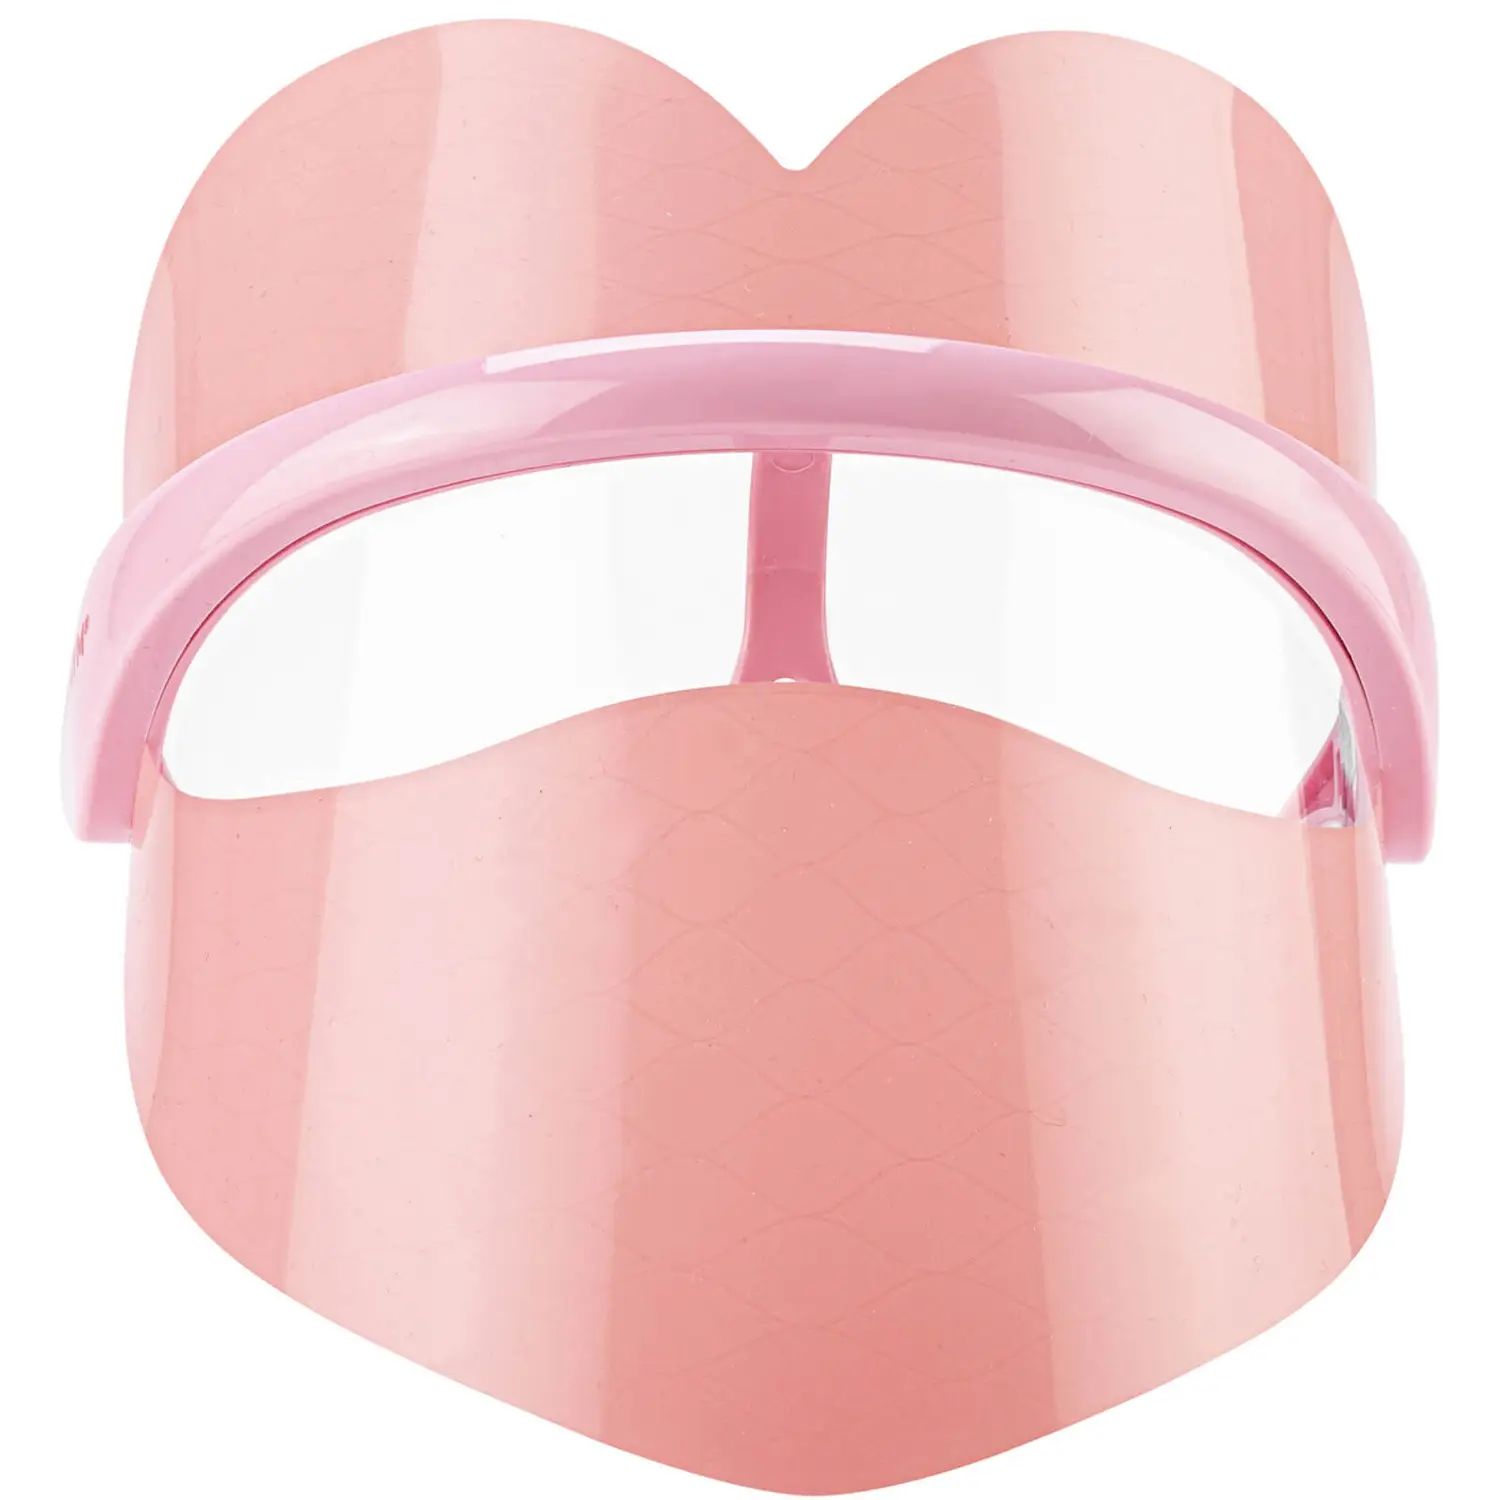 Skin Gym Wrinklit Heart LED Mask | Dermstore (US)